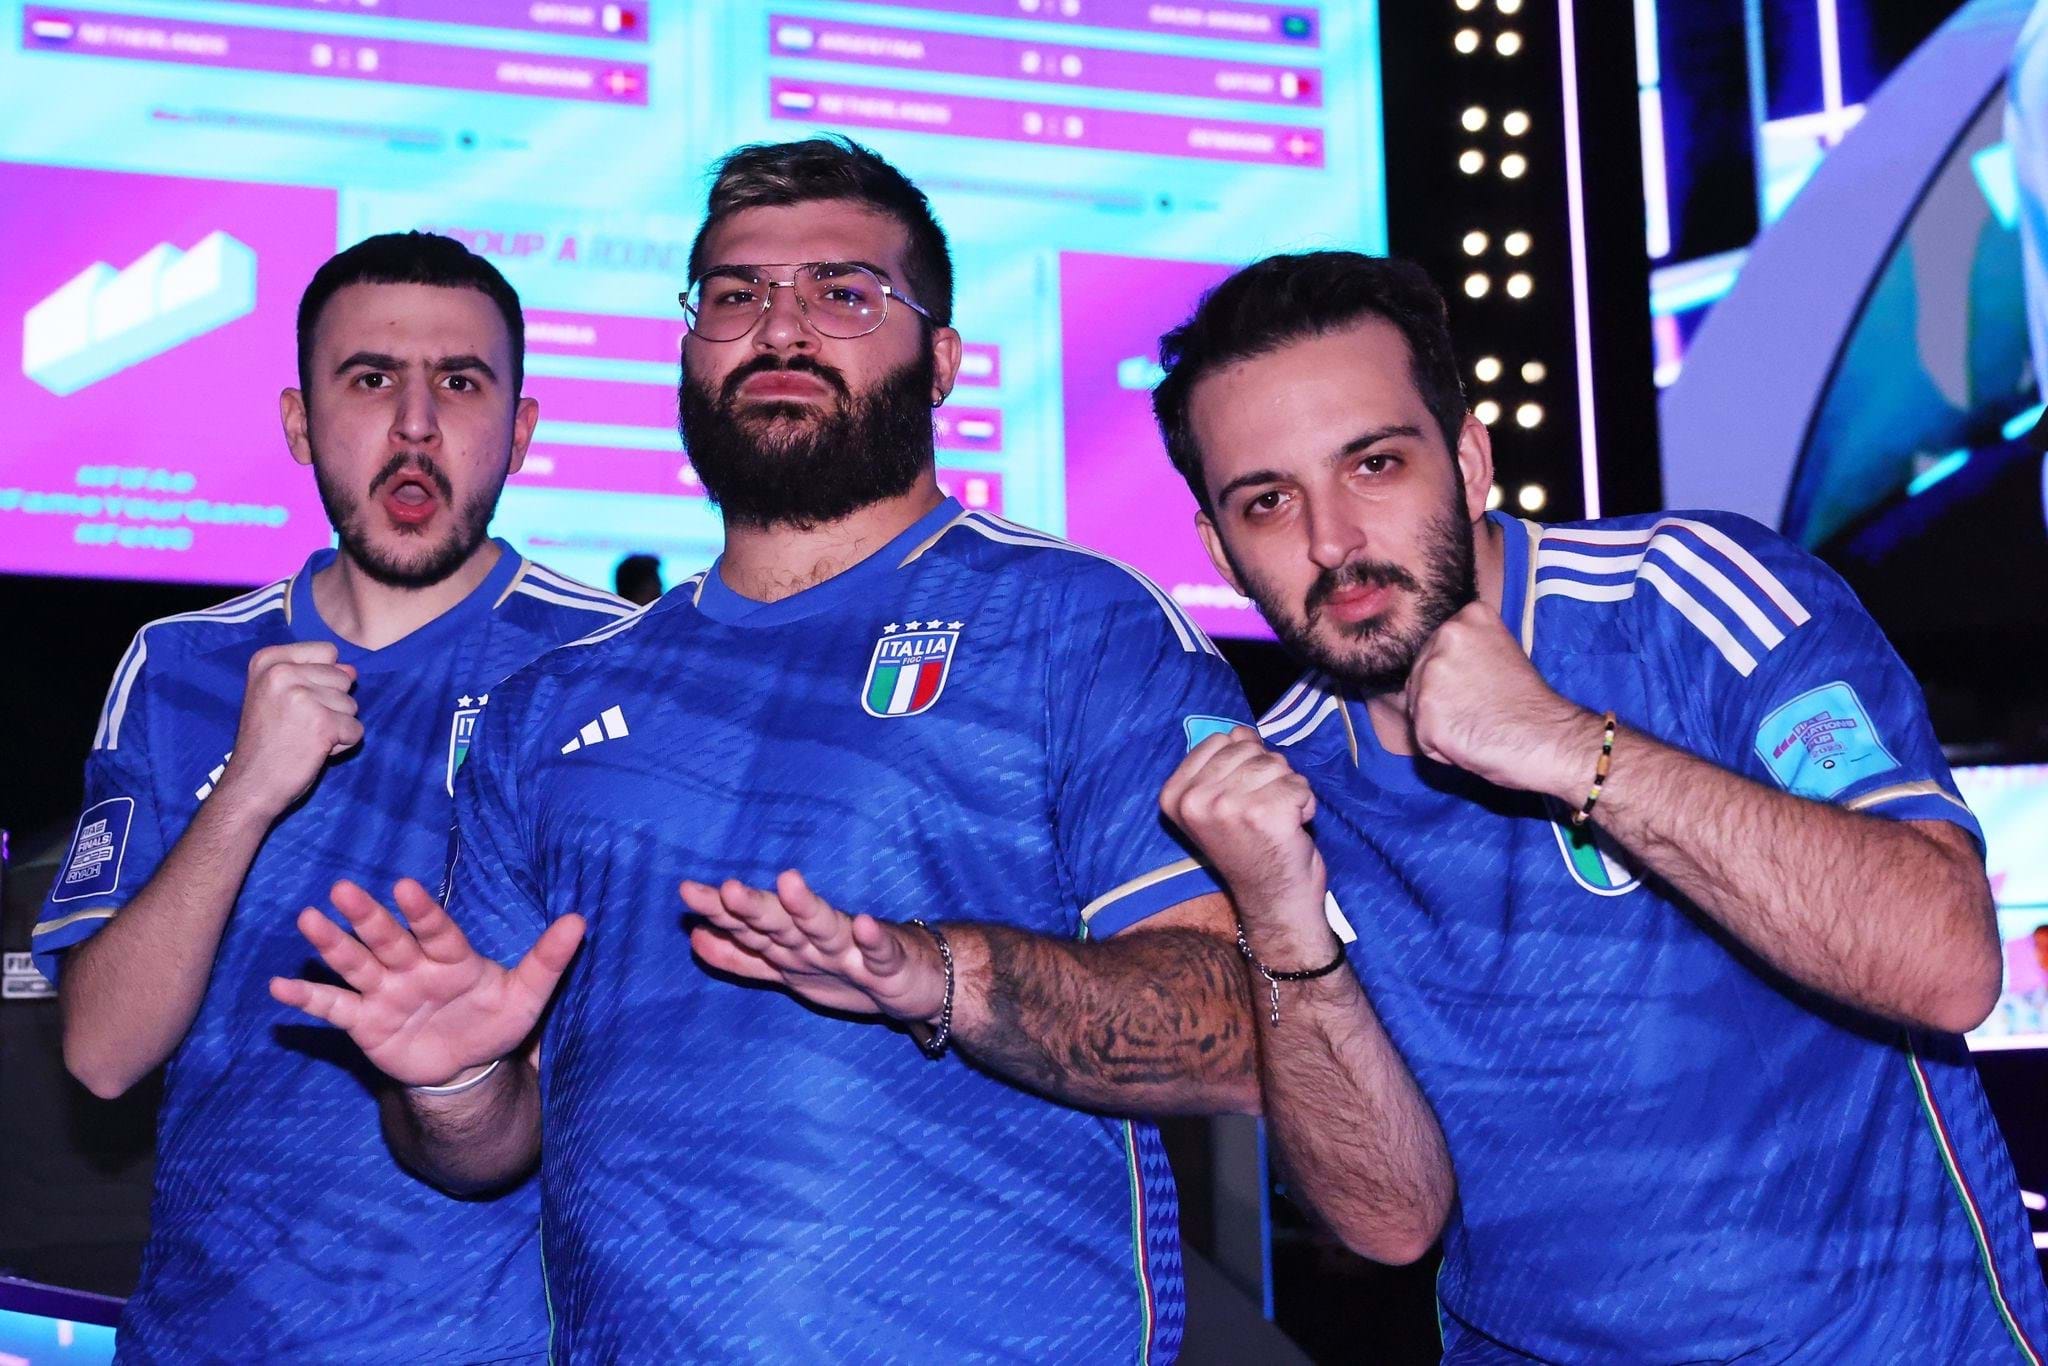 FIFAe Nations Cup, l'Italia chiude quarta nel girone e accede agli ottavi di finale. Giovedì c'è la sfida contro Israele